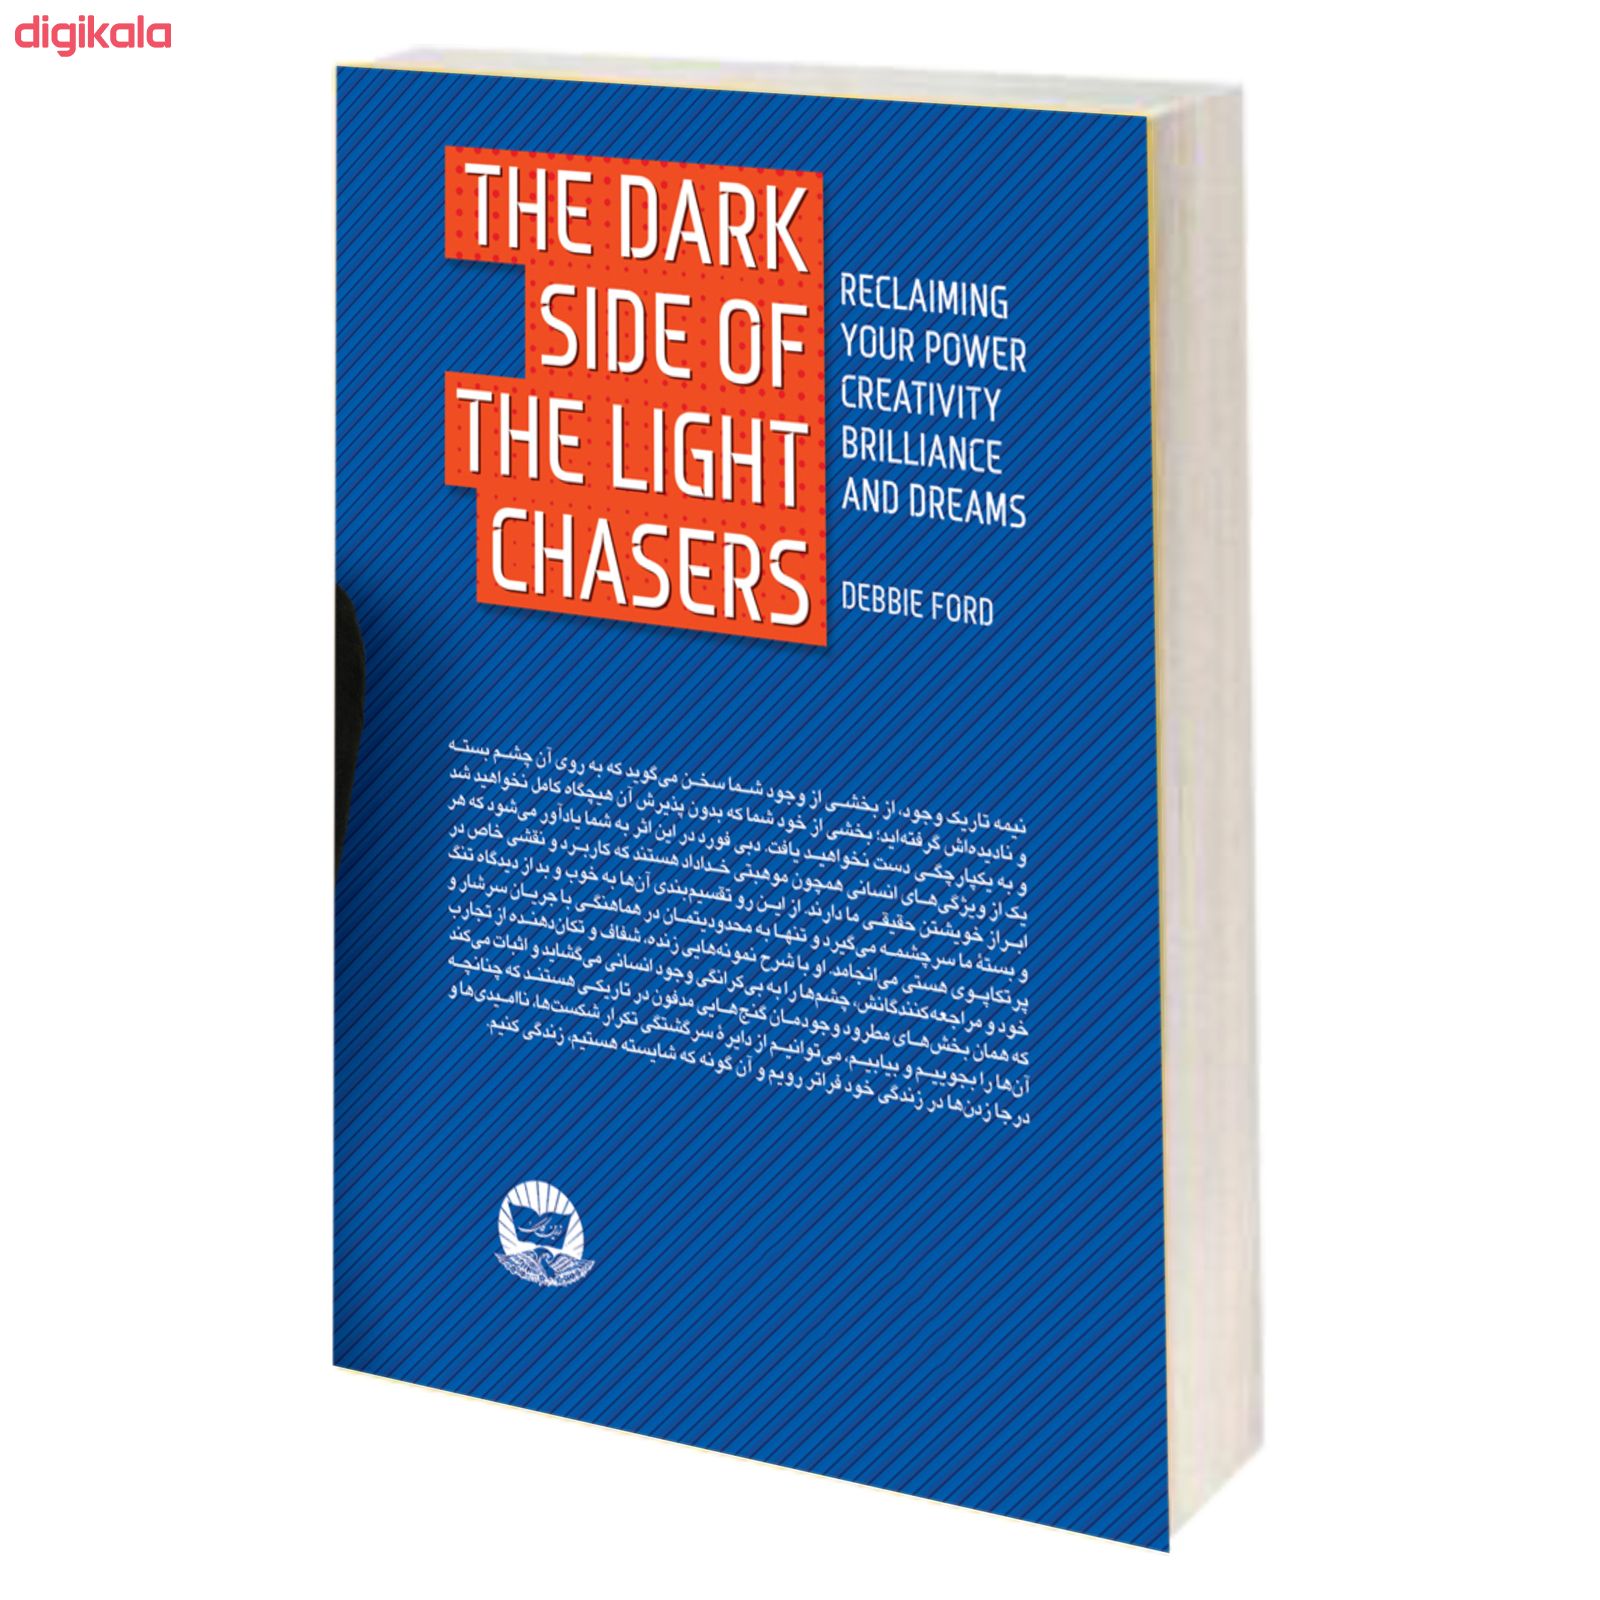  خرید اینترنتی با تخفیف ویژه کتاب نیمه تاریک وجود اثر دبی فورد نشر ندای معاصر